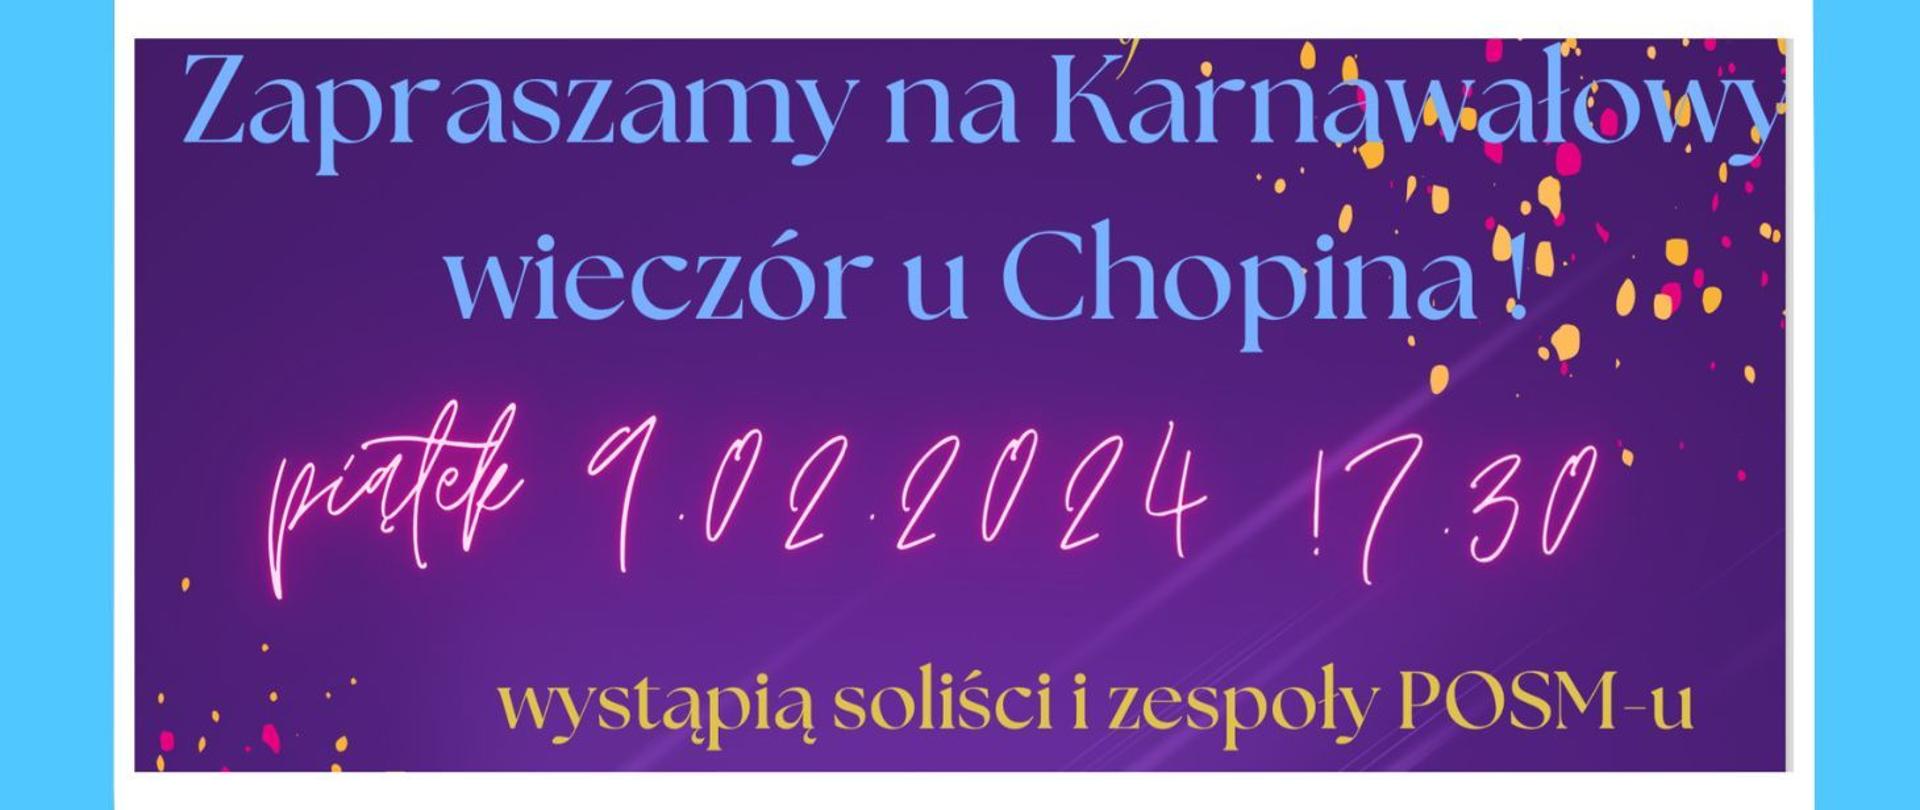 Baner, tło fioletowe z grafikami karnawałowymi; tekst: Zapraszamy na Karnawałowy wieczór u Chopina, piątek 9.02.2024 17.30